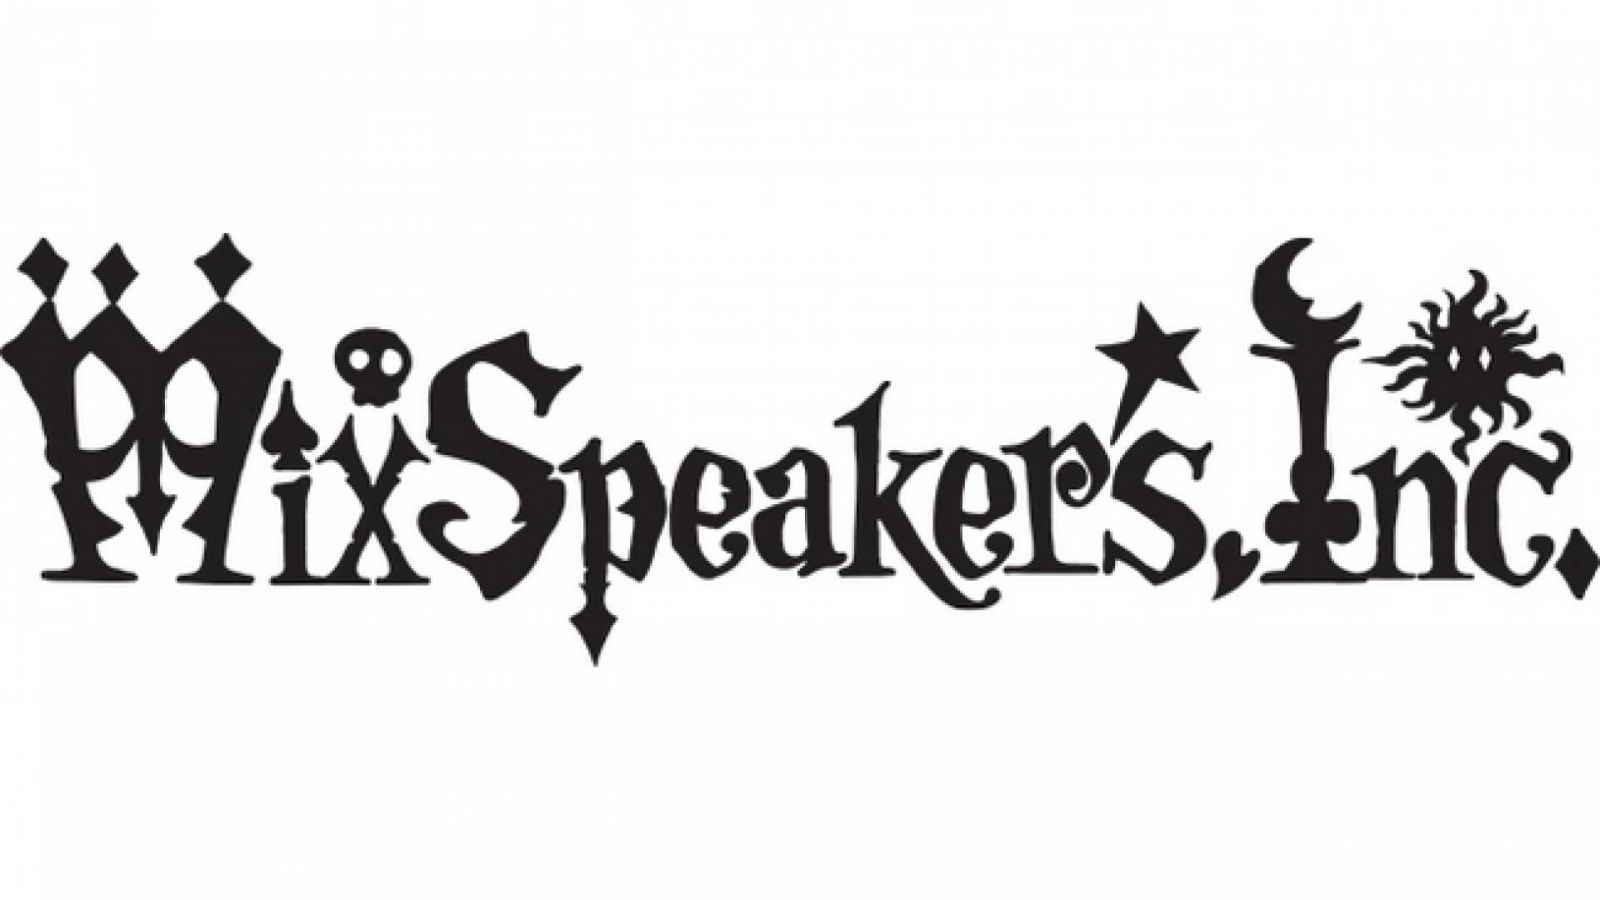 Ein Neuer bei Mix Speaker's,Inc. © Mix Speaker's, Inc.